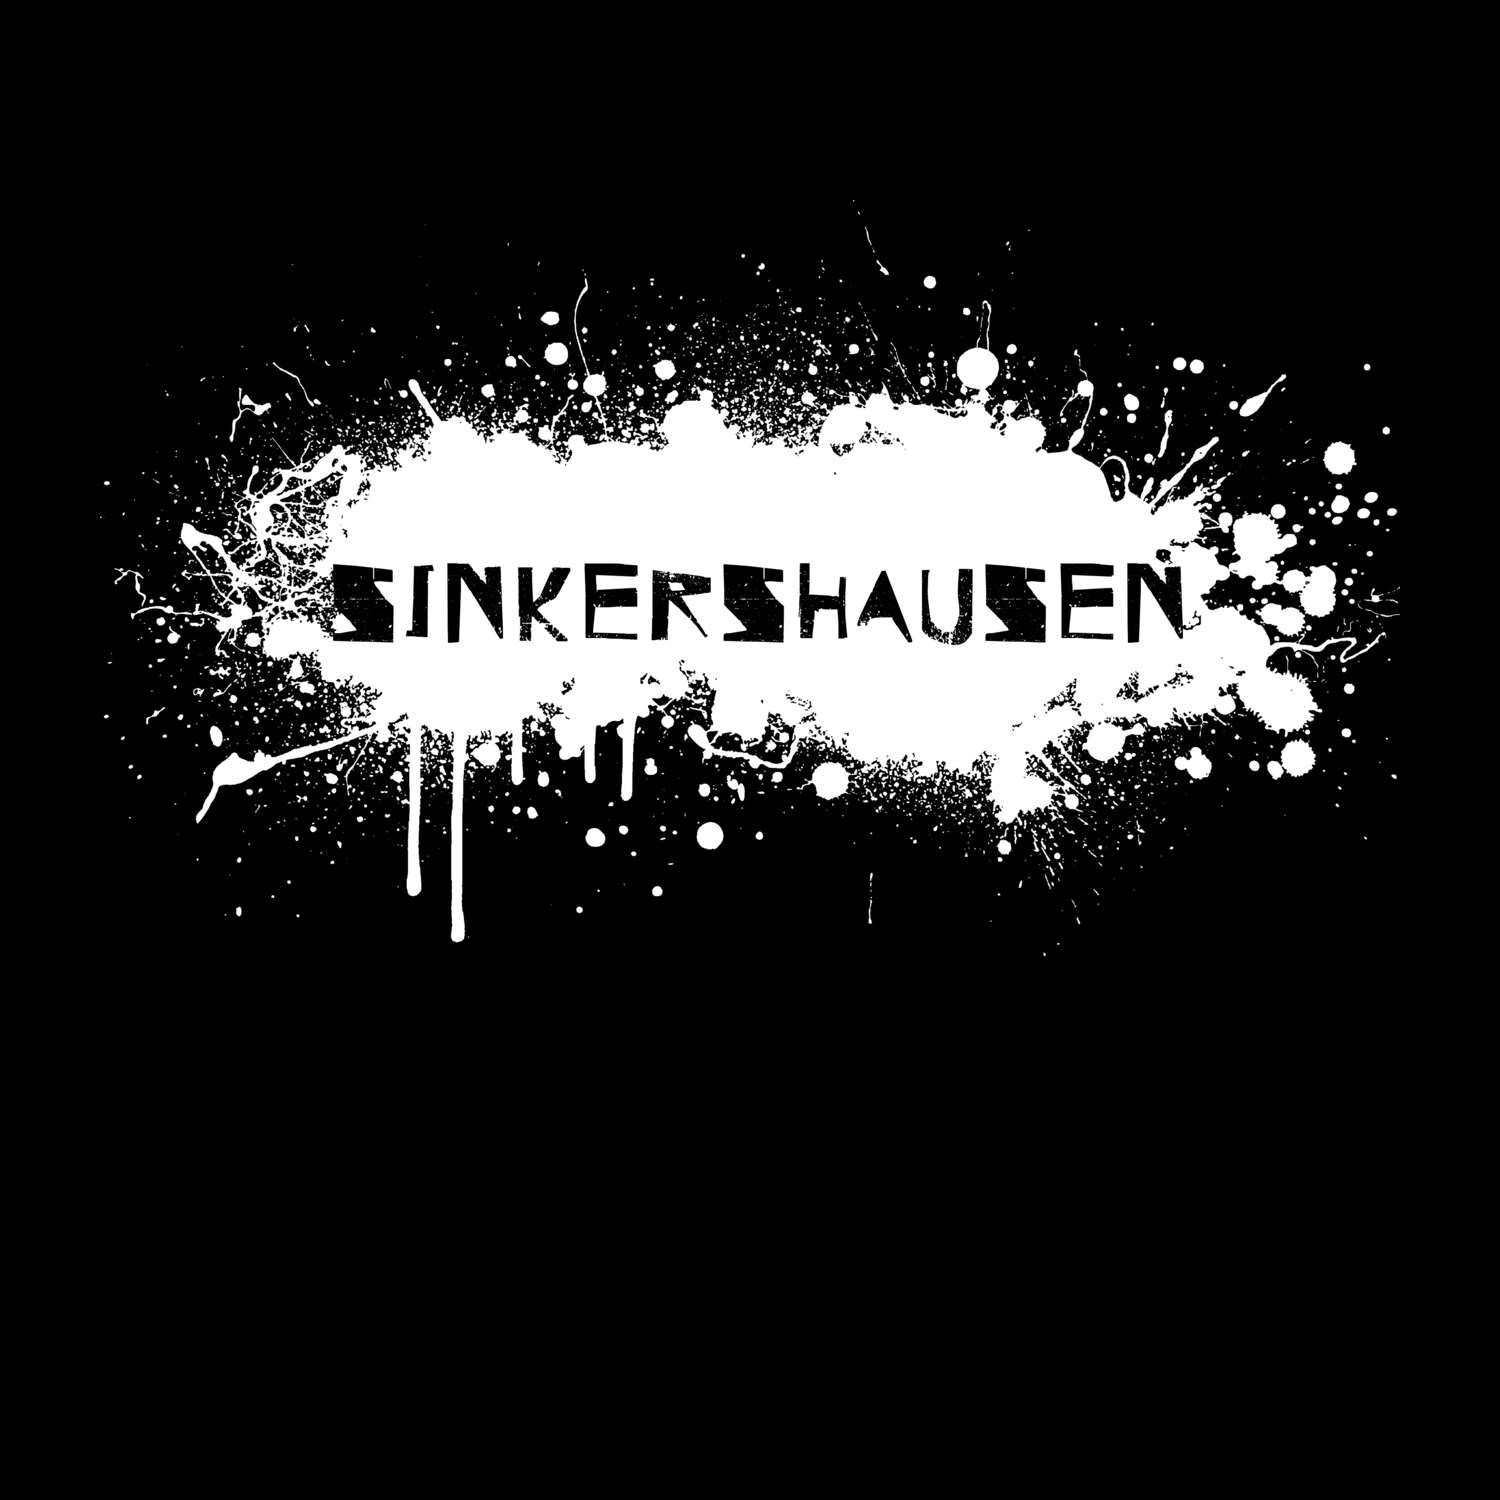 Sinkershausen T-Shirt »Paint Splash Punk«